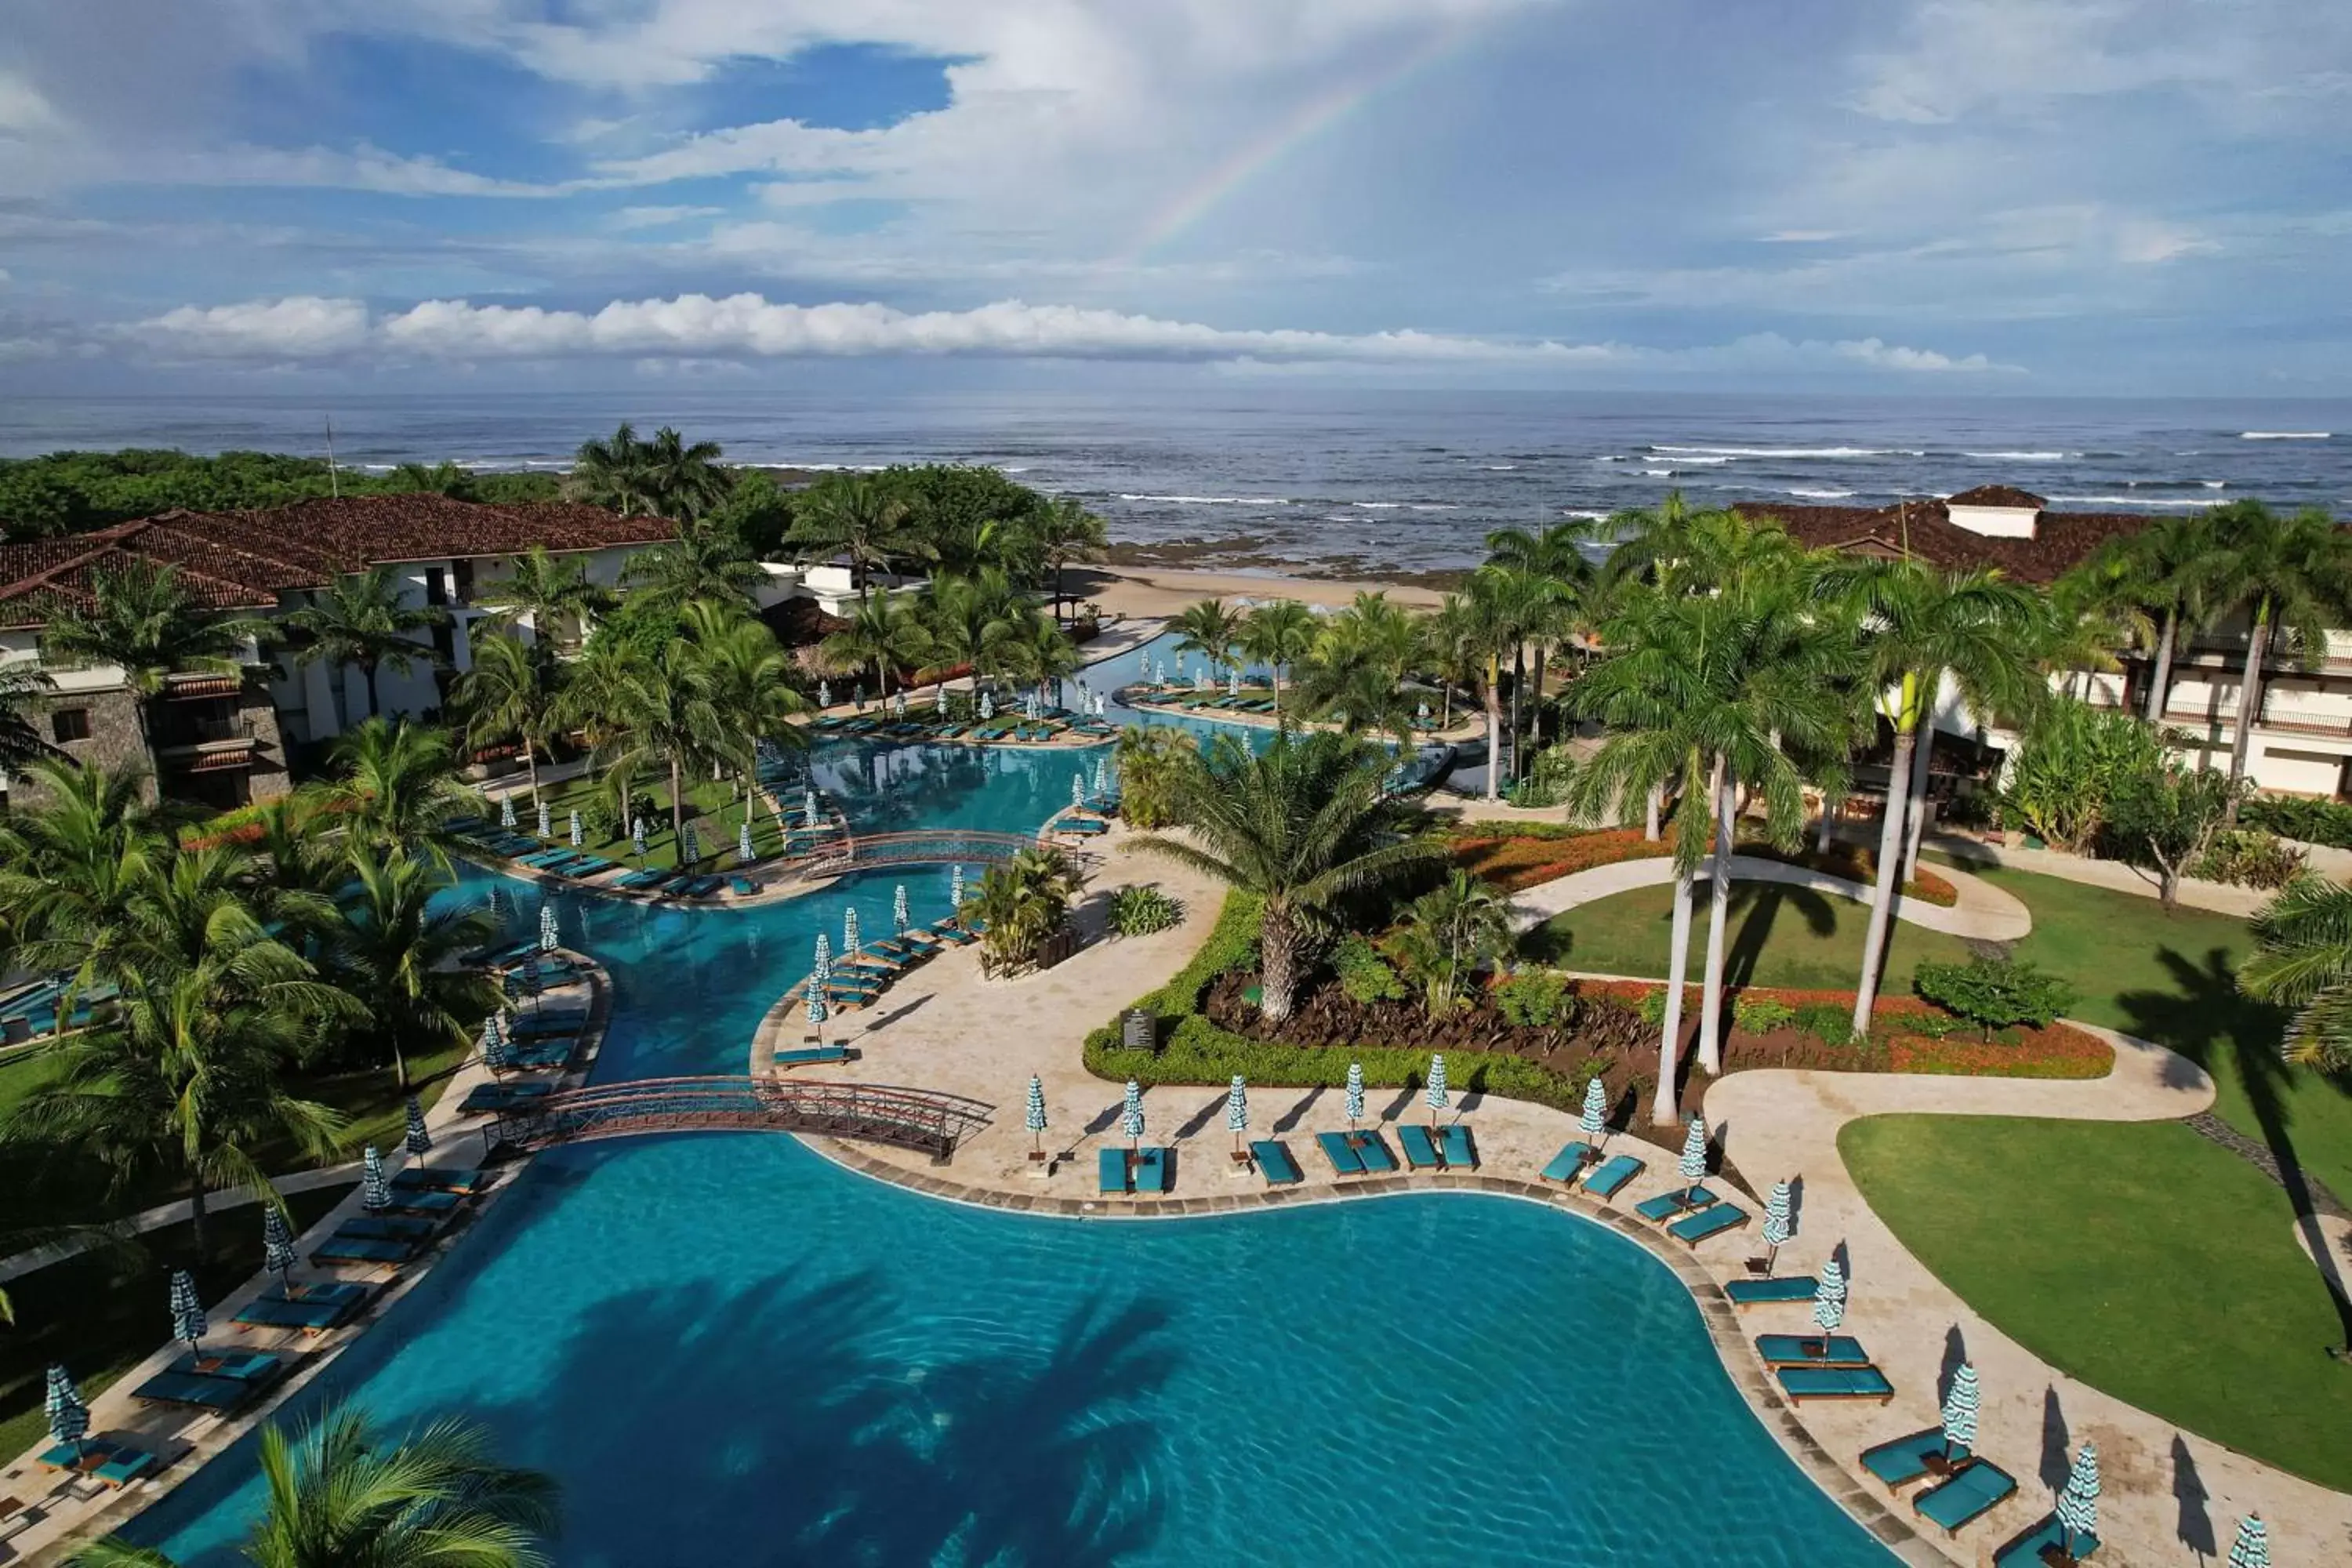 Swimming pool, Pool View in JW Marriott Guanacaste Resort & Spa